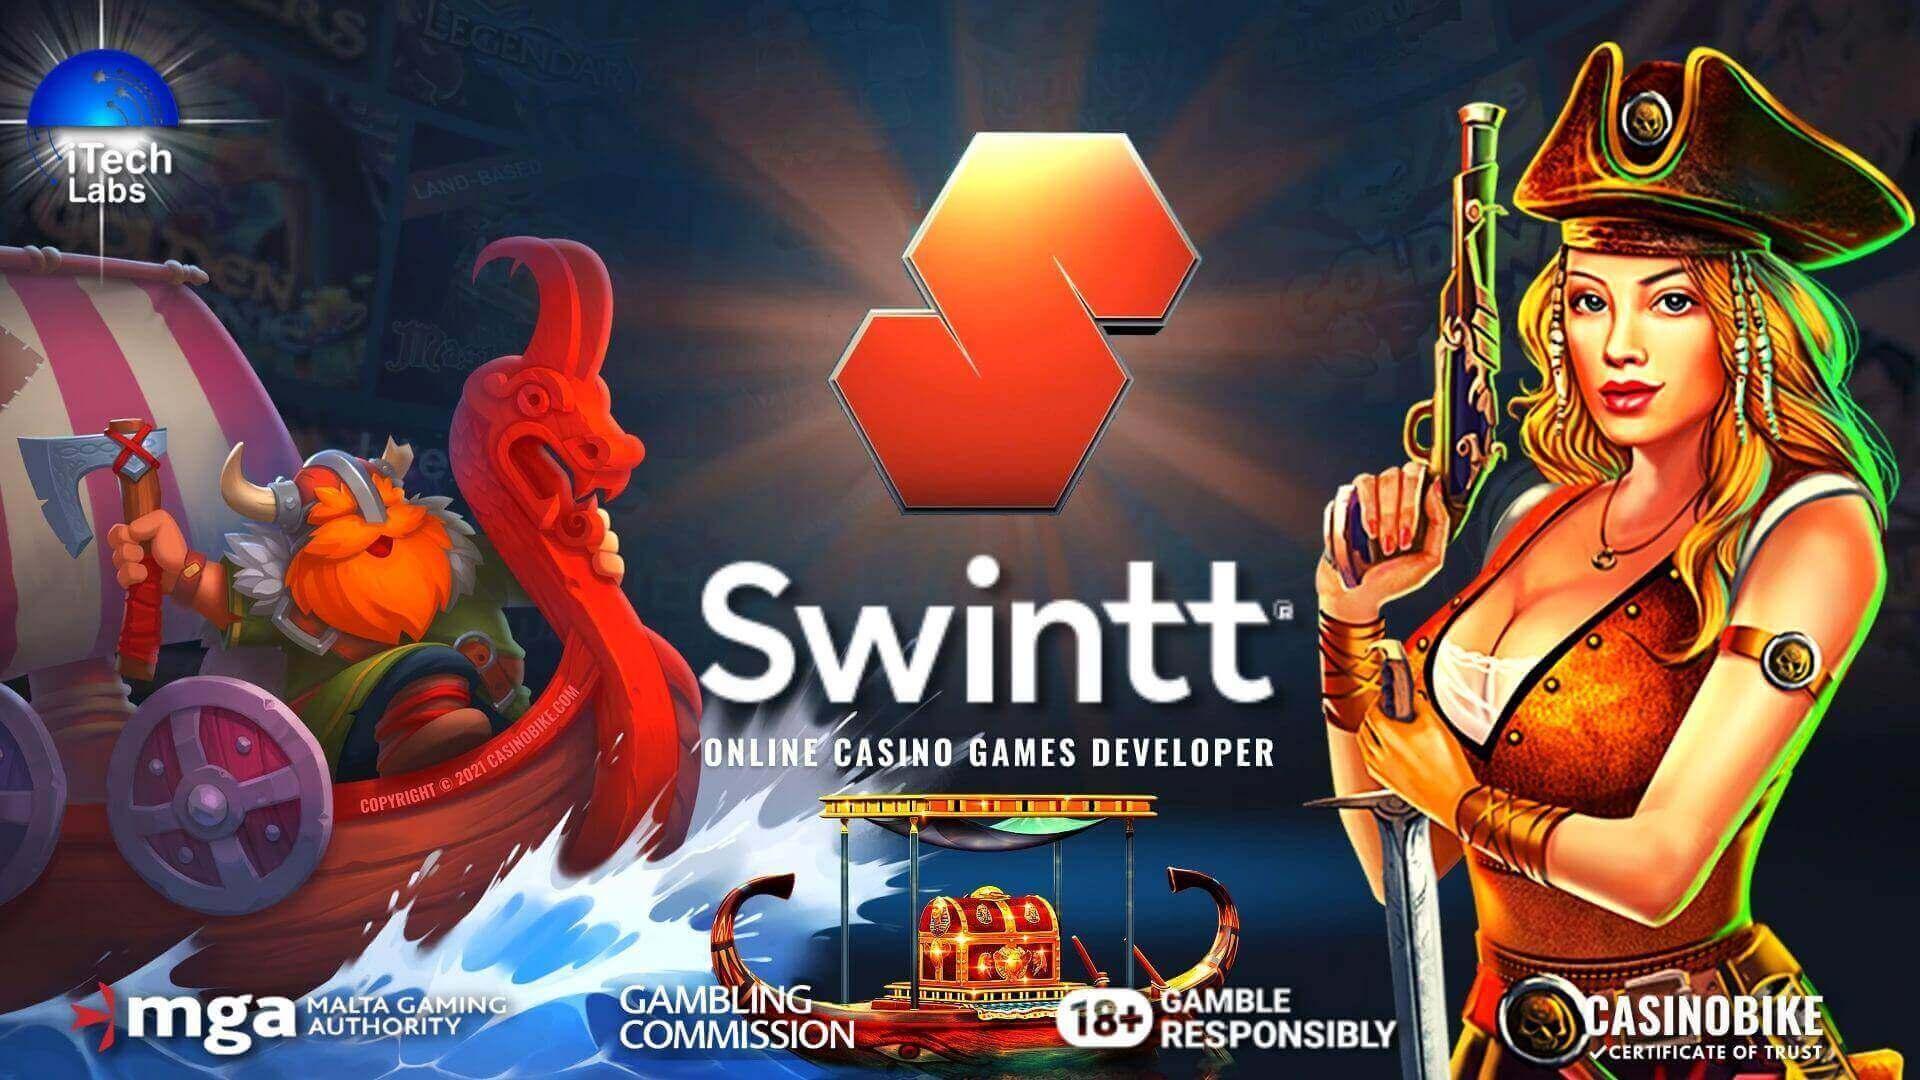 Swintt Gaming Online Casino Slots Developer Review